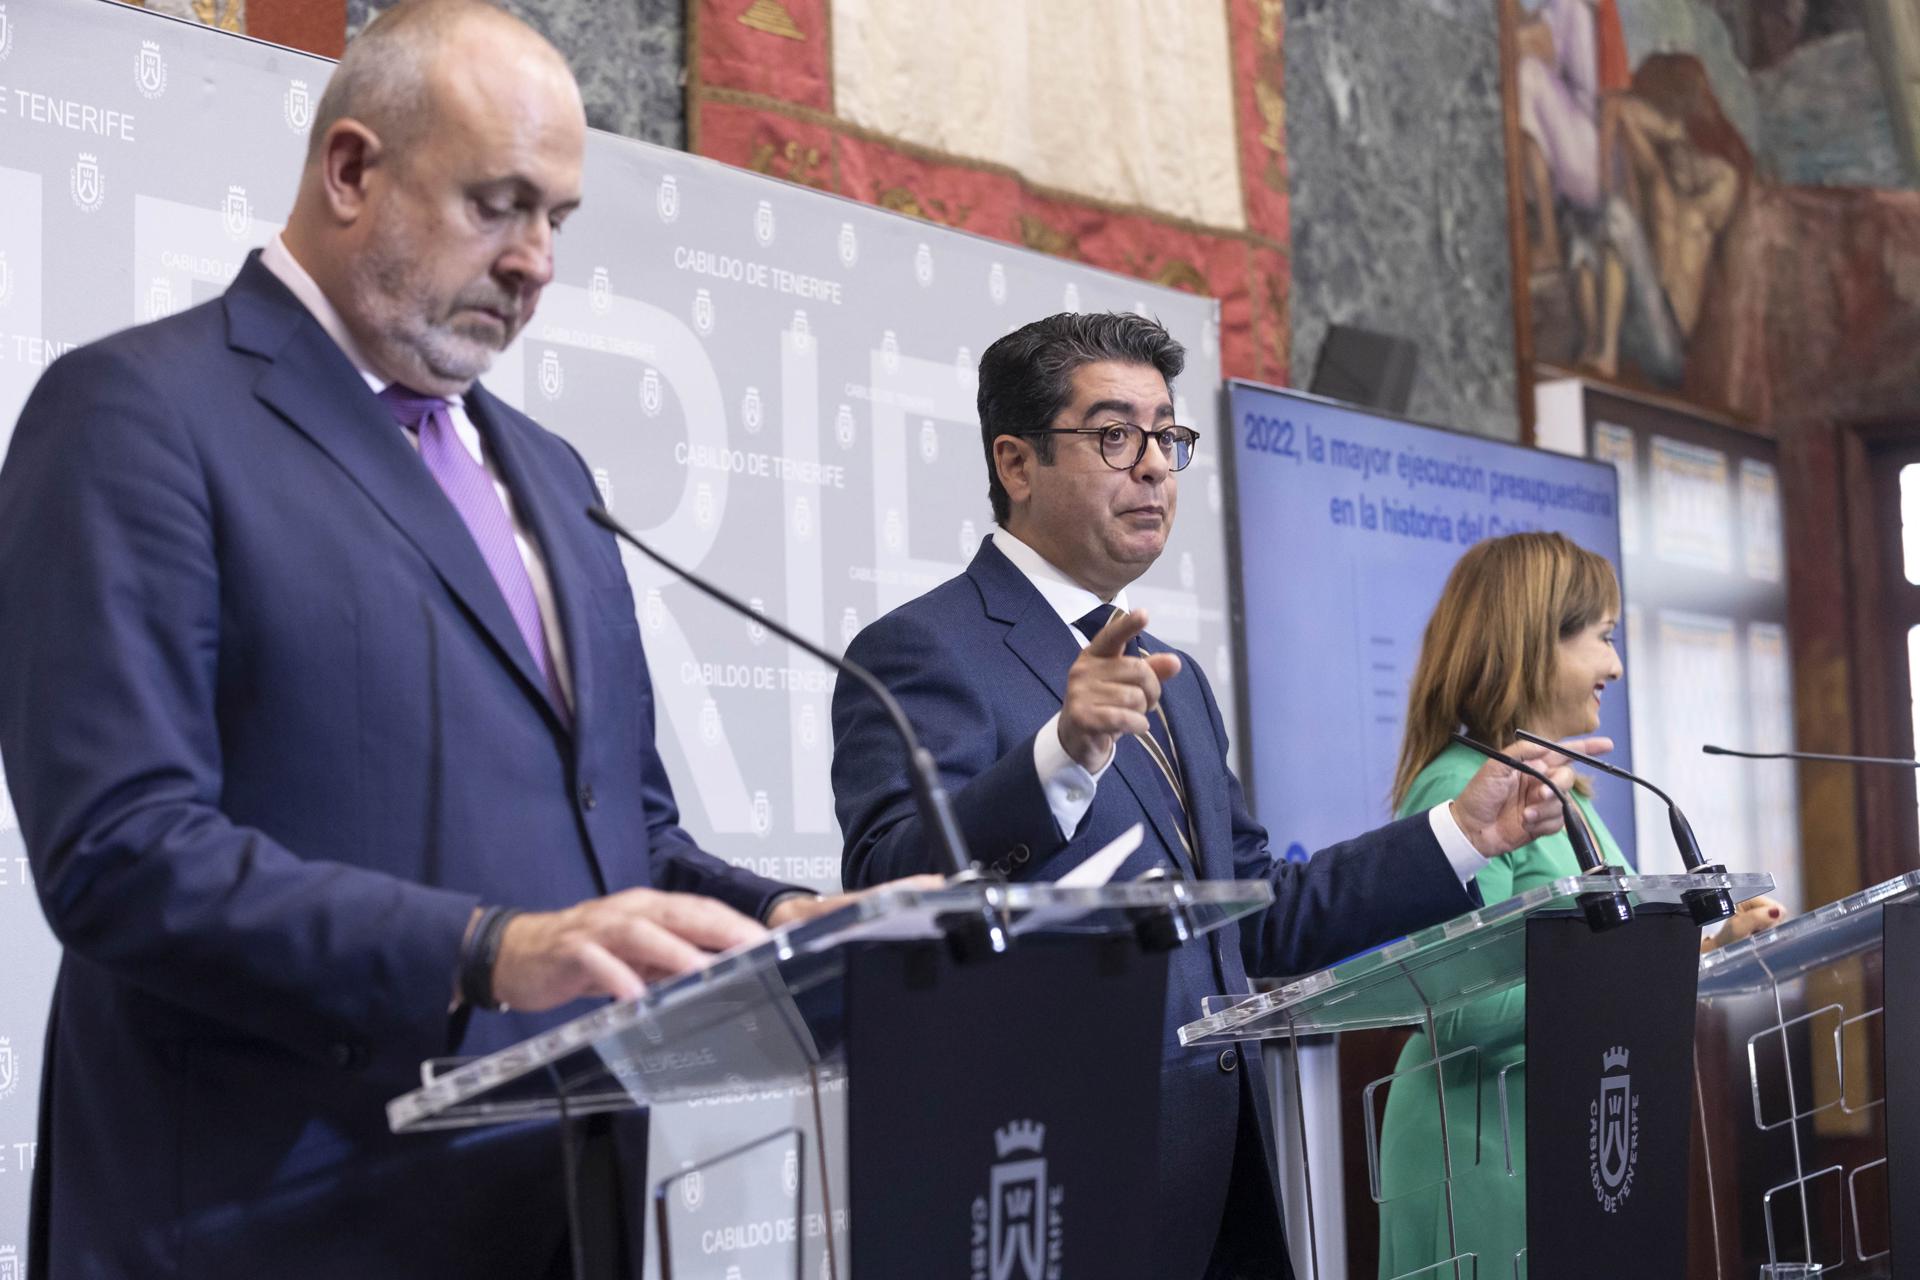 El presidente del Cabildo de Tenerife Pedro Marín (c) acompañado de los vicepresidentes Enrique Arriaga (i) y Berta Pérez (d), ha presentado los presupuestos de la corporación para 2023. EFE/Miguel Barreto